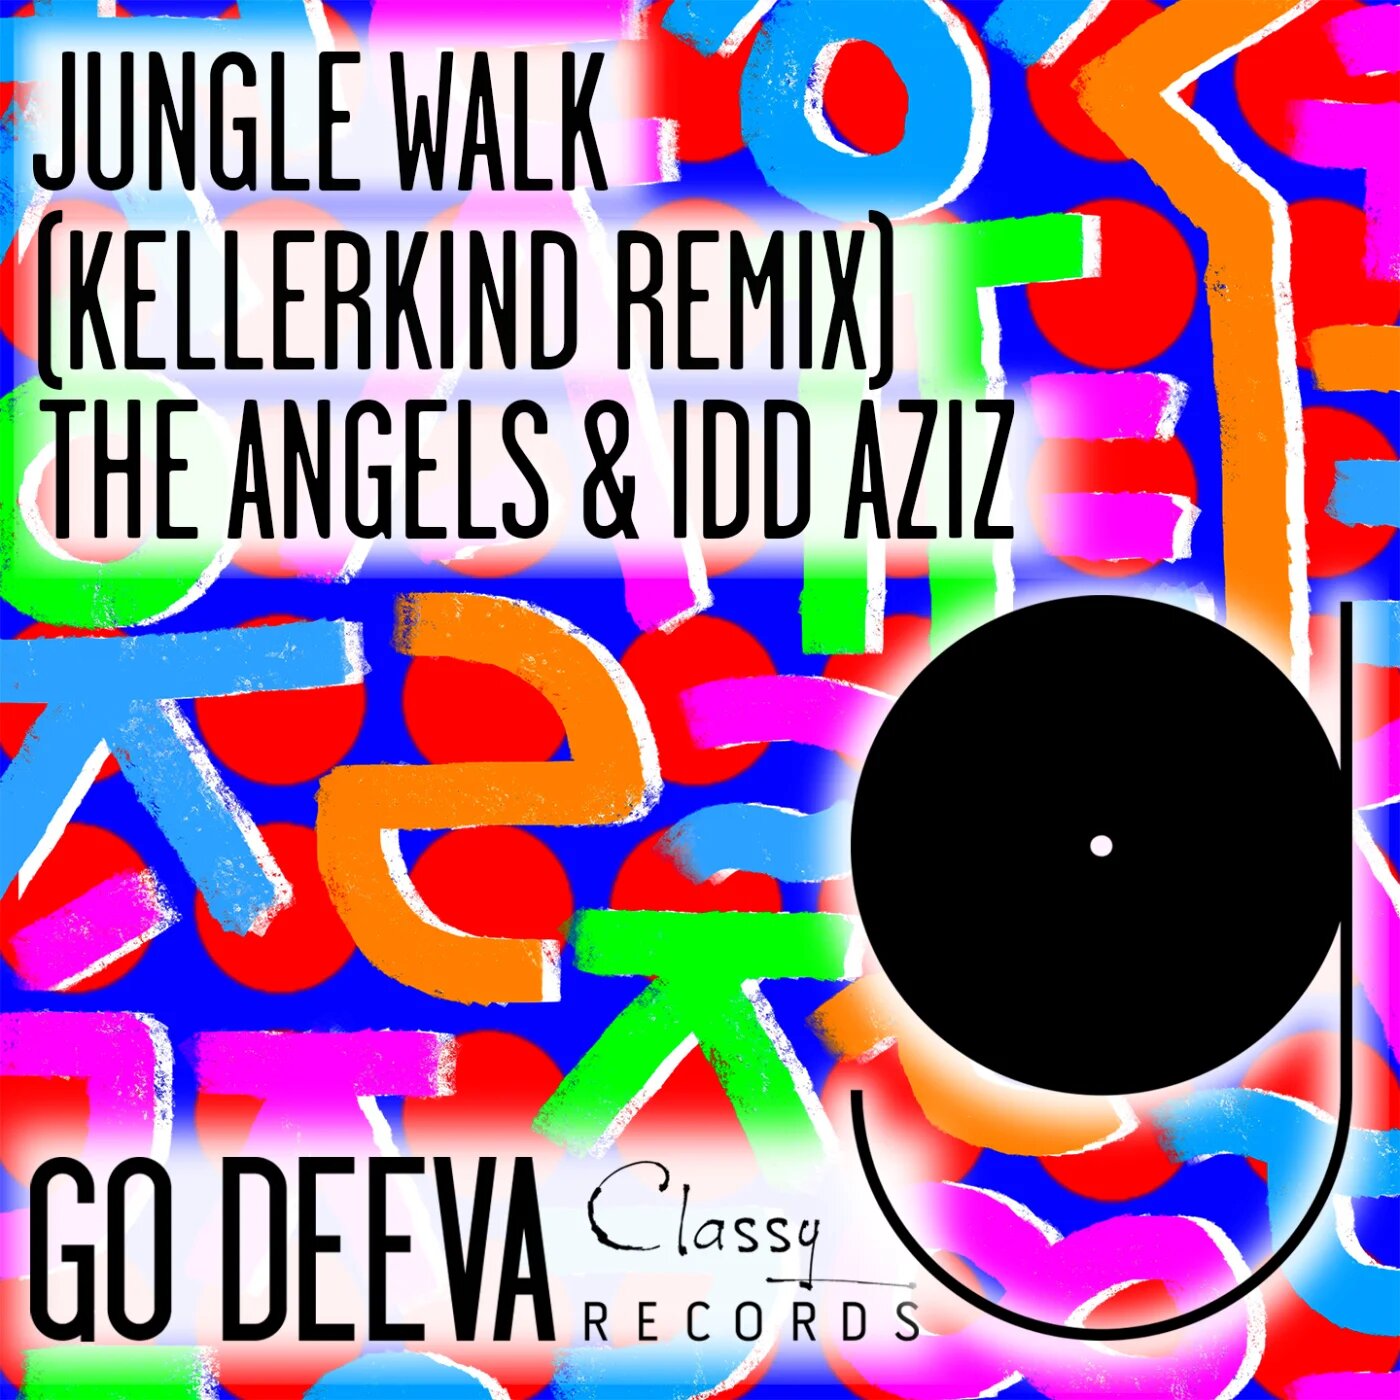 Idd Aziz & The Angels (IL) - Jungle Walk feat. Idd Aziz (Kellerkind Remix)